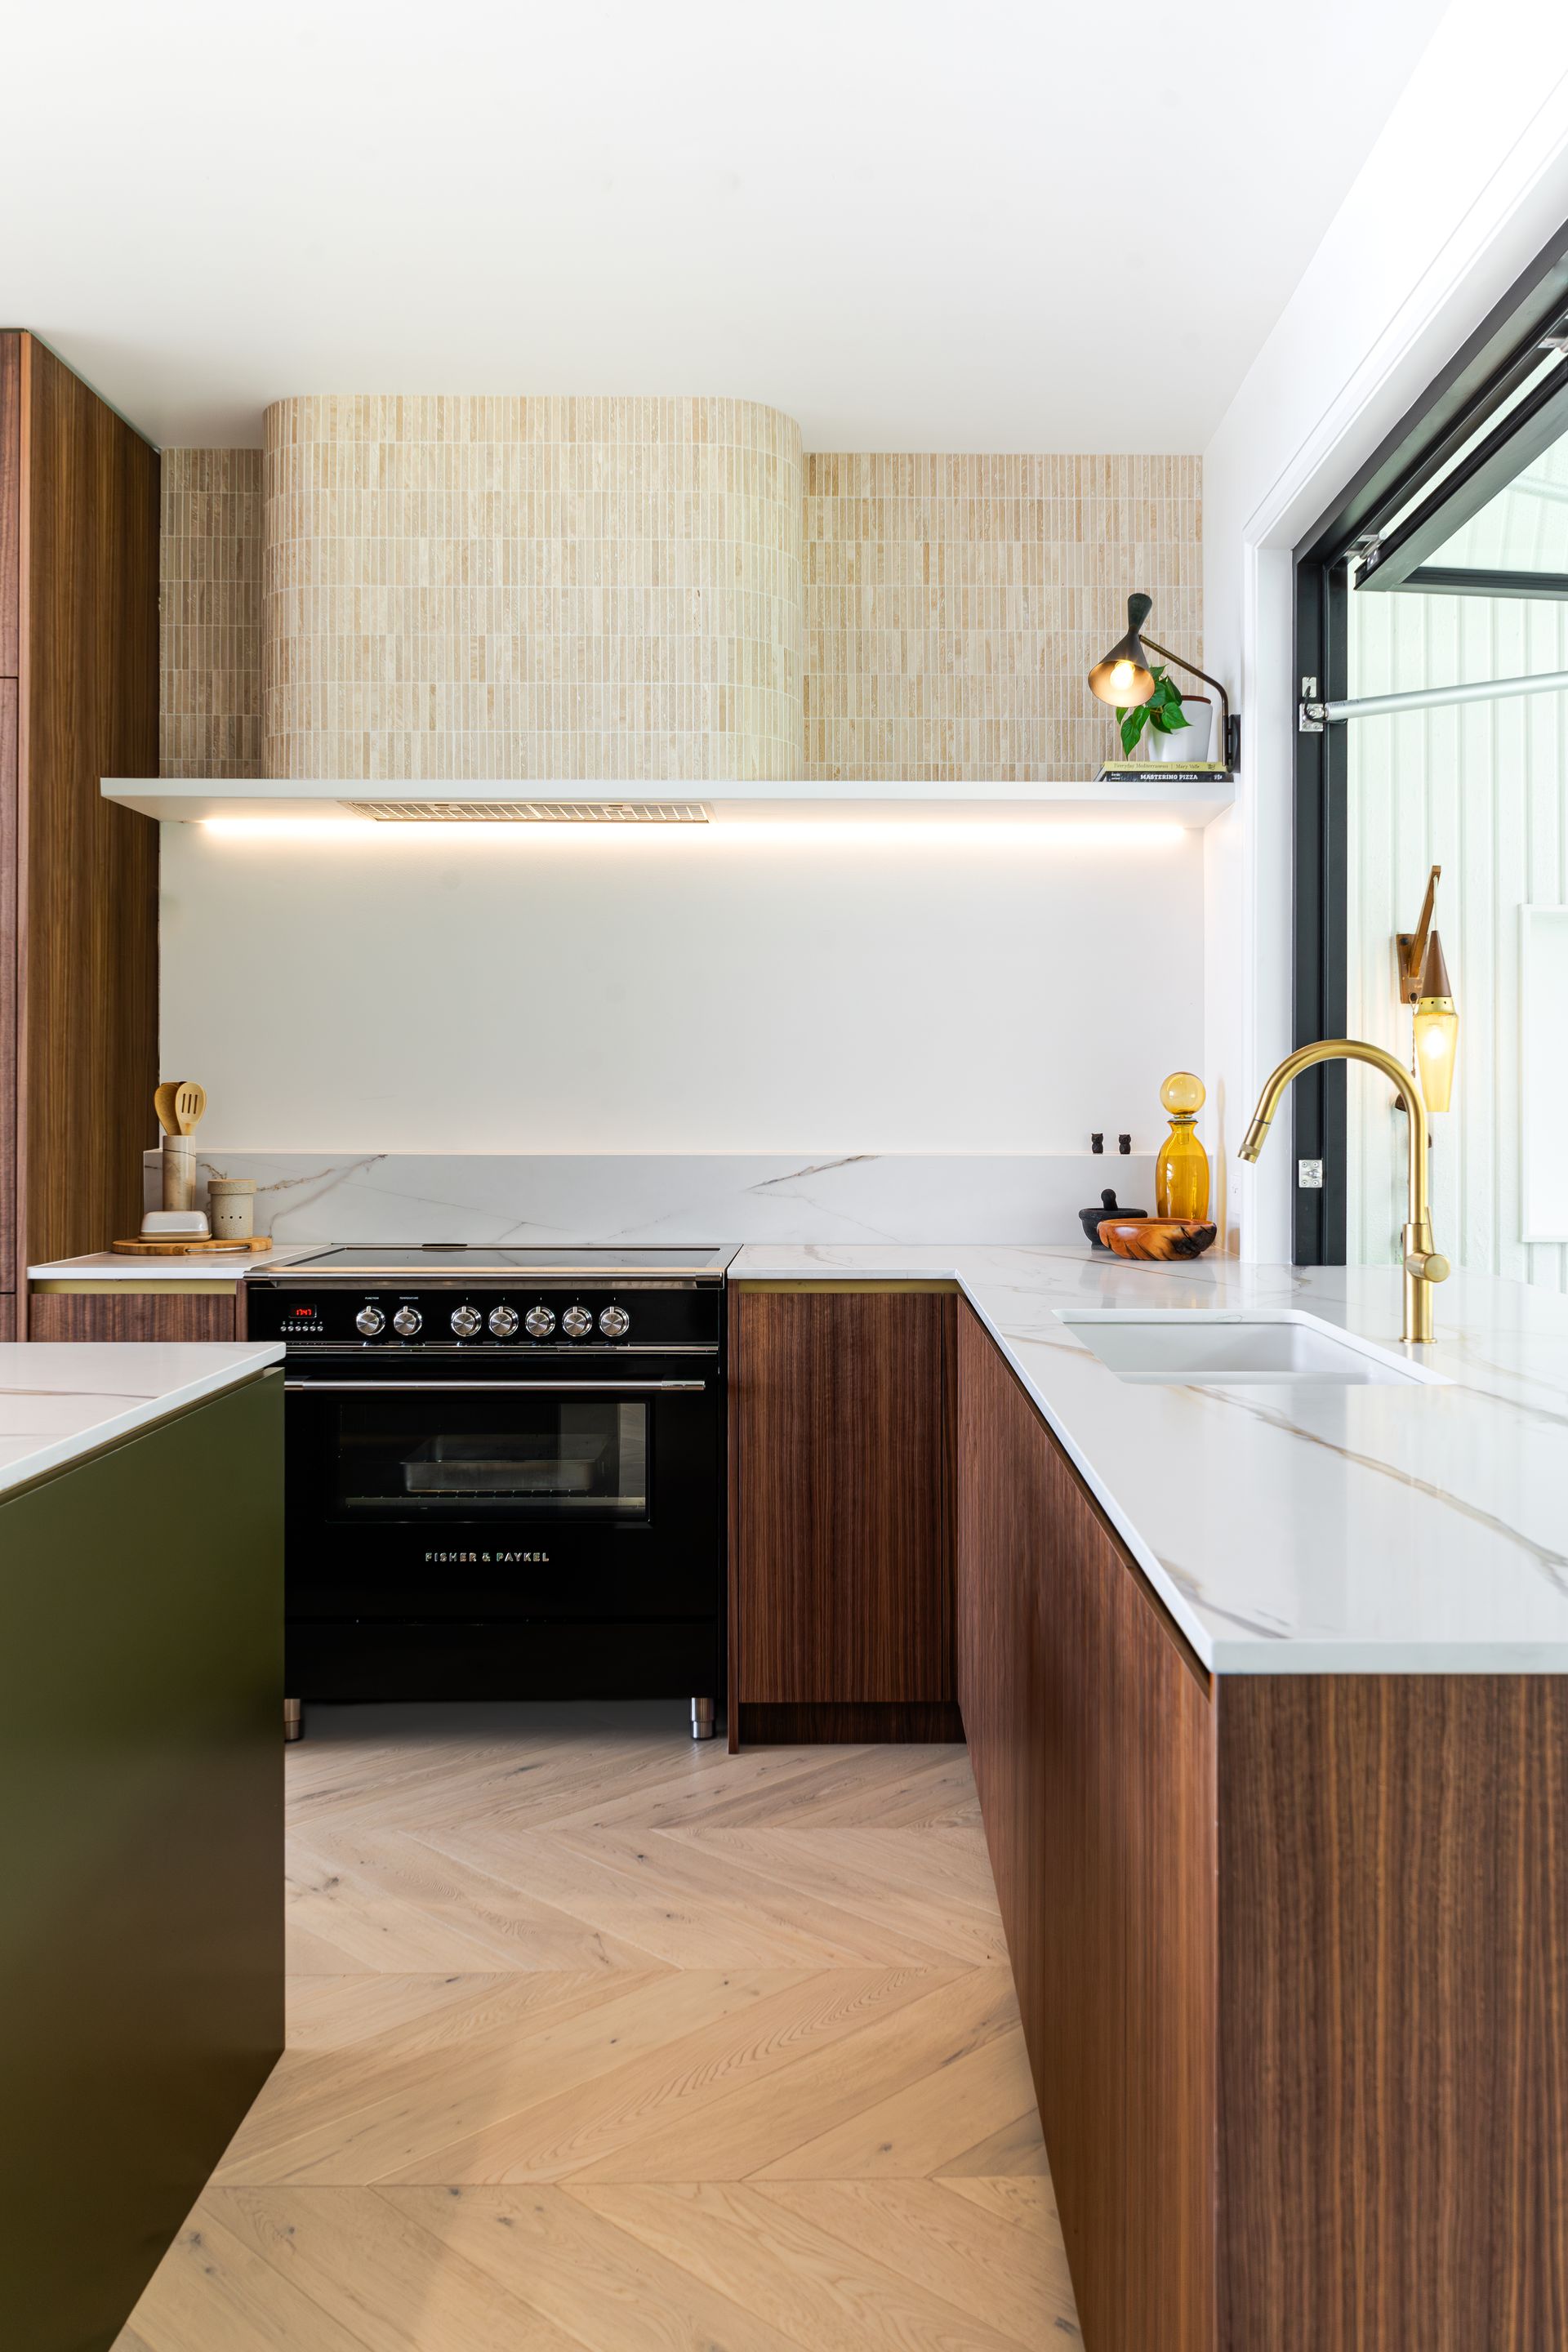 Mid Century modern custom kitchen design by our Vista Kitchens dream kitchens Newcastle team